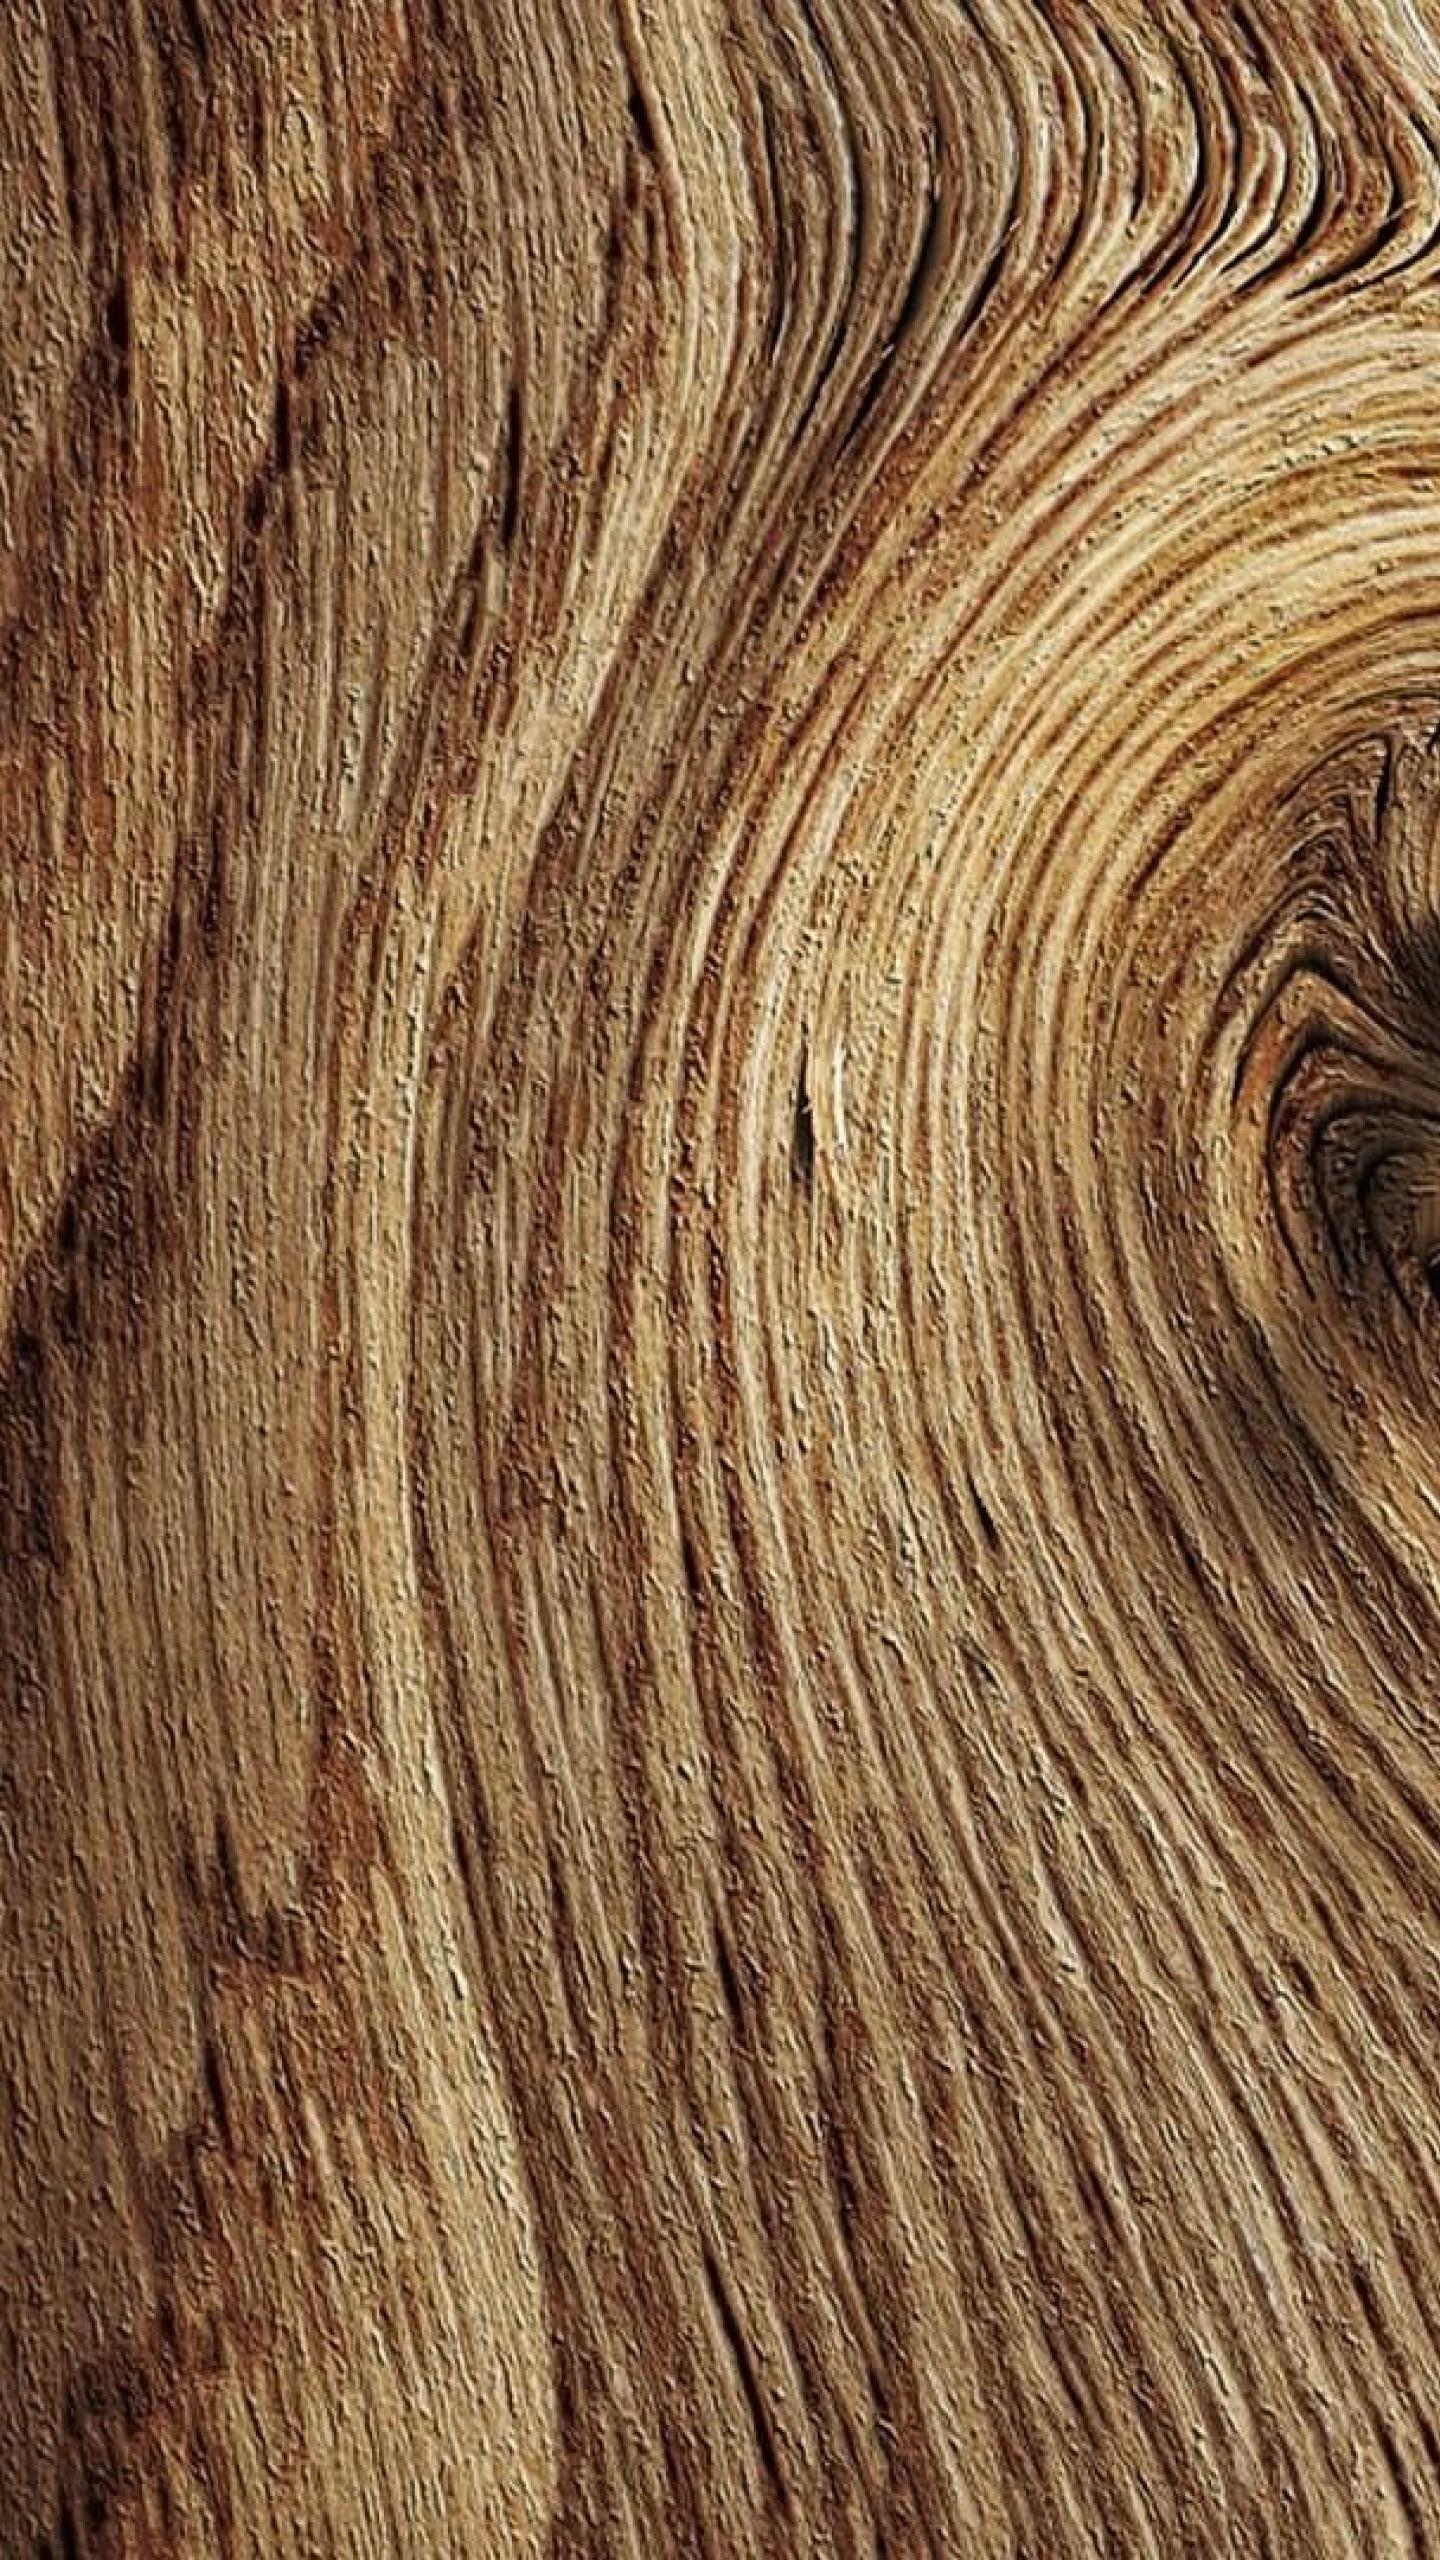 Với hình nền gỗ thô, bạn sẽ được mời đến một không gian hoang sơ và gần gũi với thiên nhiên. Hãy thưởng thức hình ảnh và cảm nhận được sự đẹp độc đáo của nó.